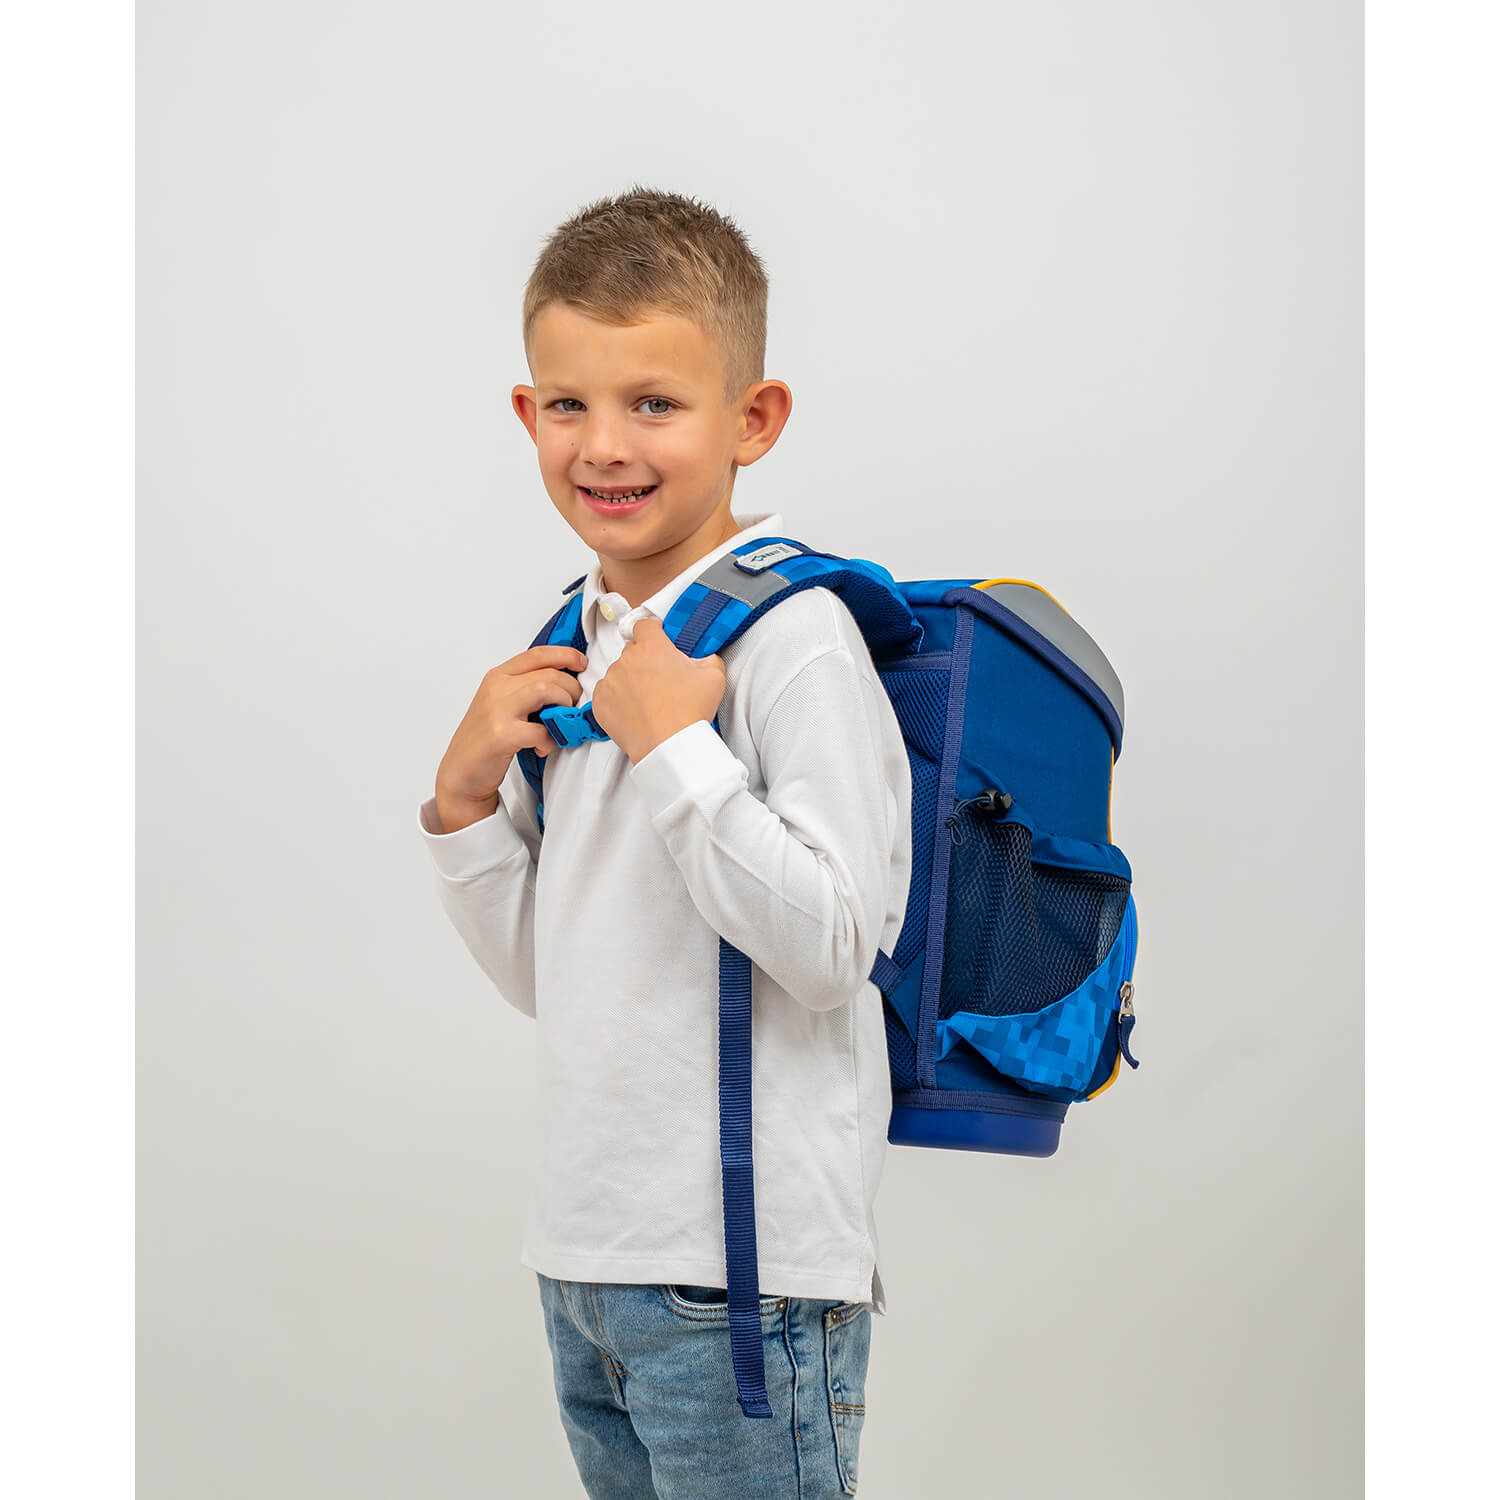 Mini-Fit Bulldozer schoolbag set 5 pcs with GRATIS chest strap